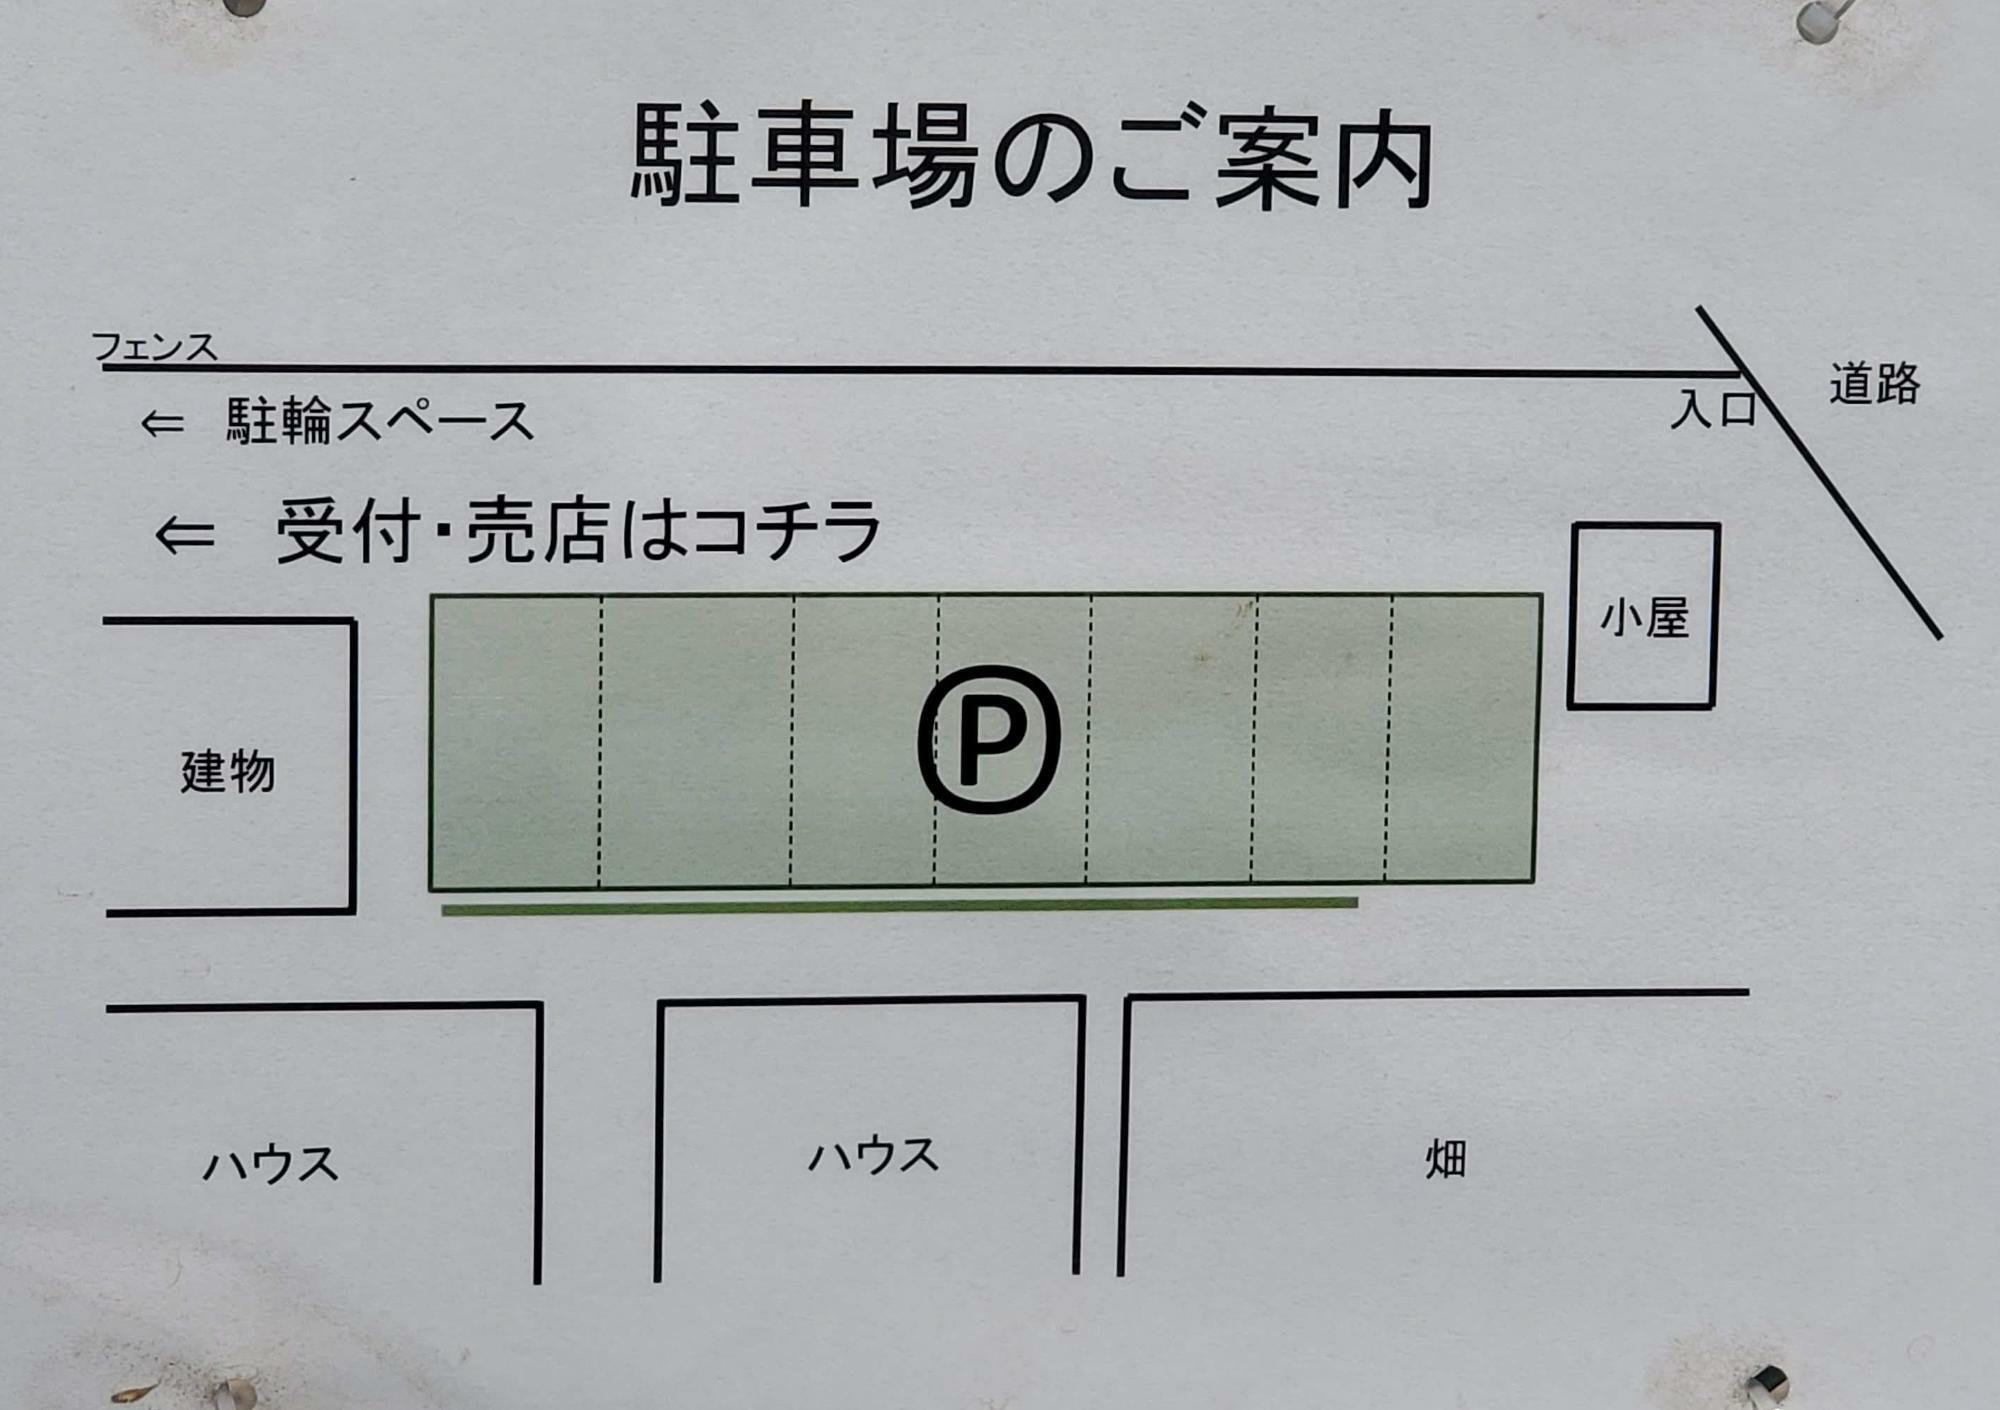 駐車場の案内図